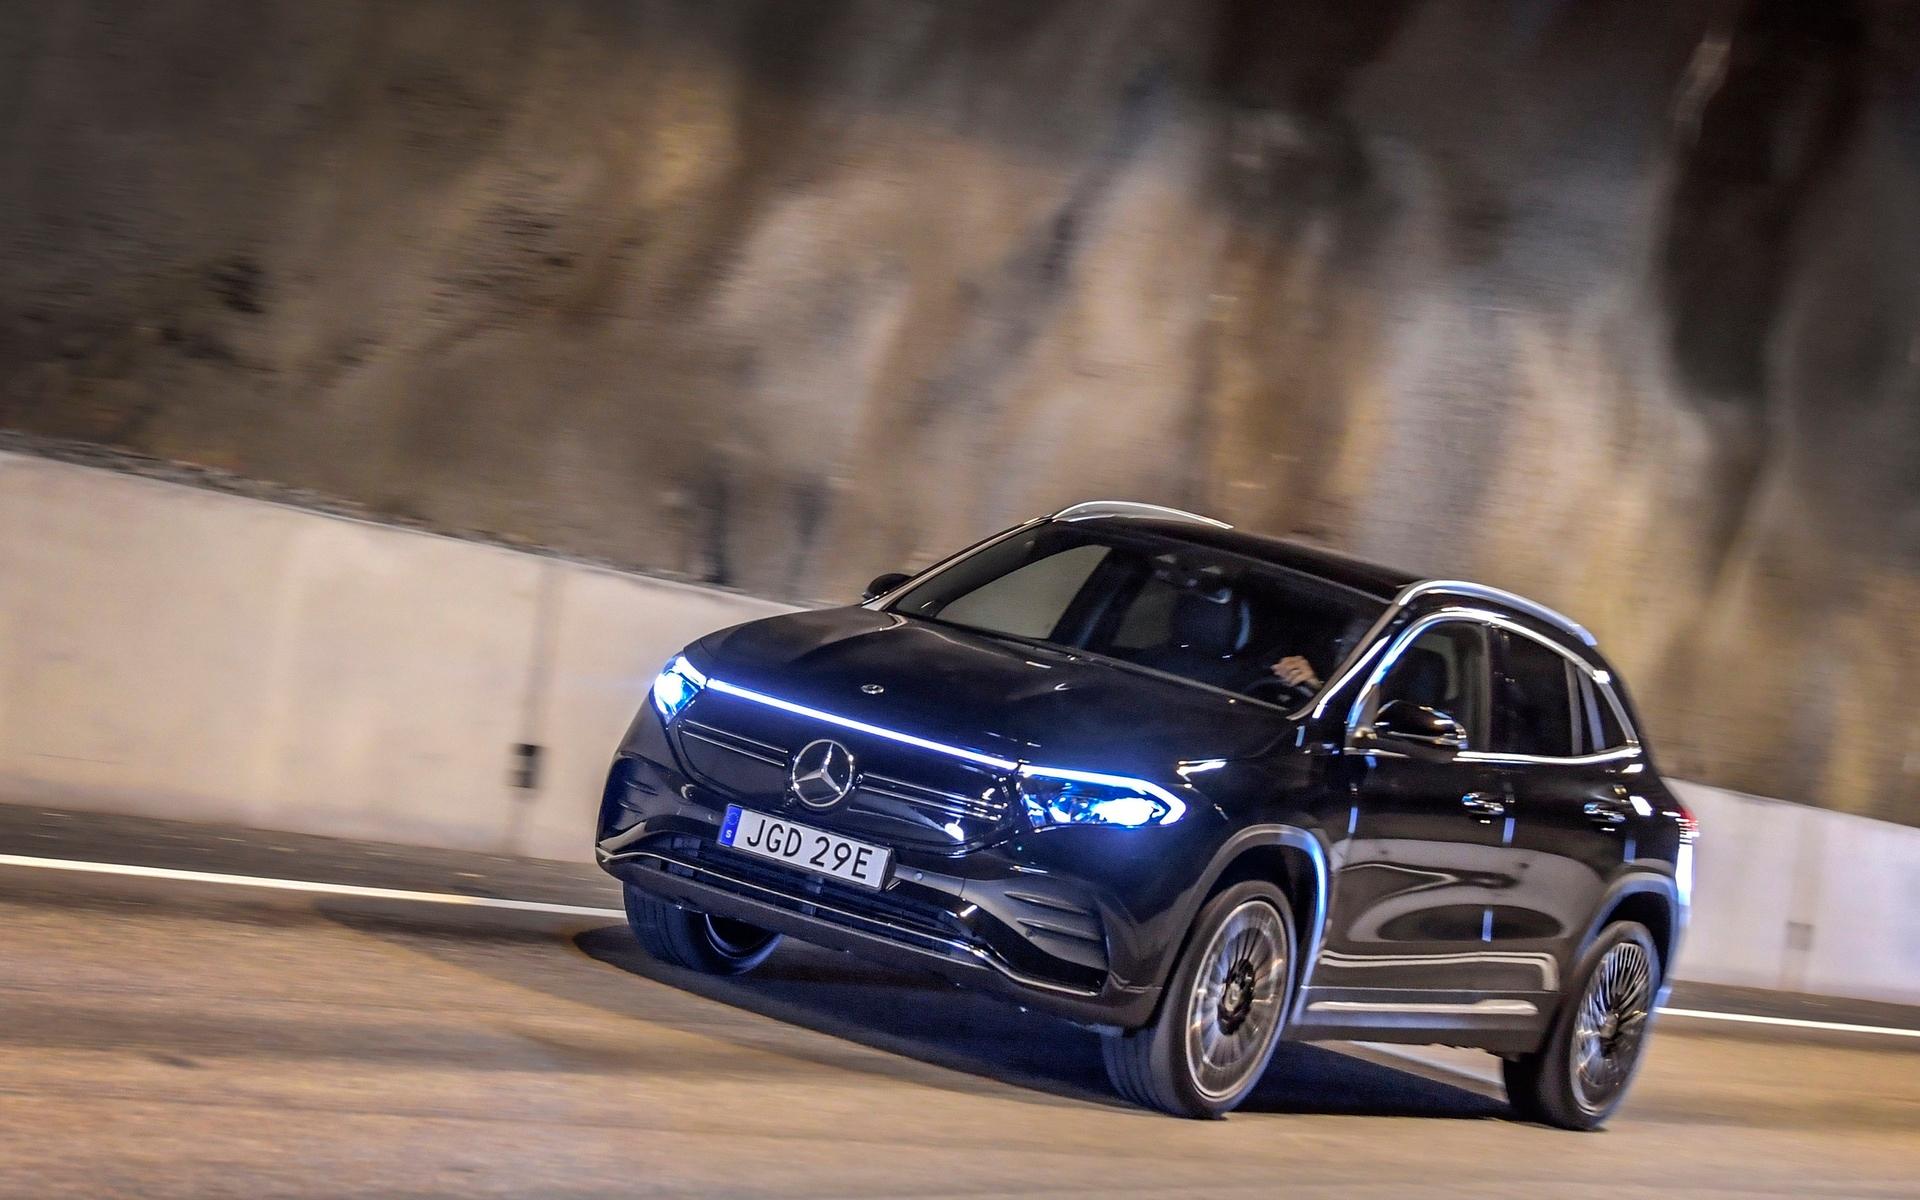 Mercedes elbilar känns igen på de långa svepande ljuslisterna i front och akter samt det blå emblemet EQ.